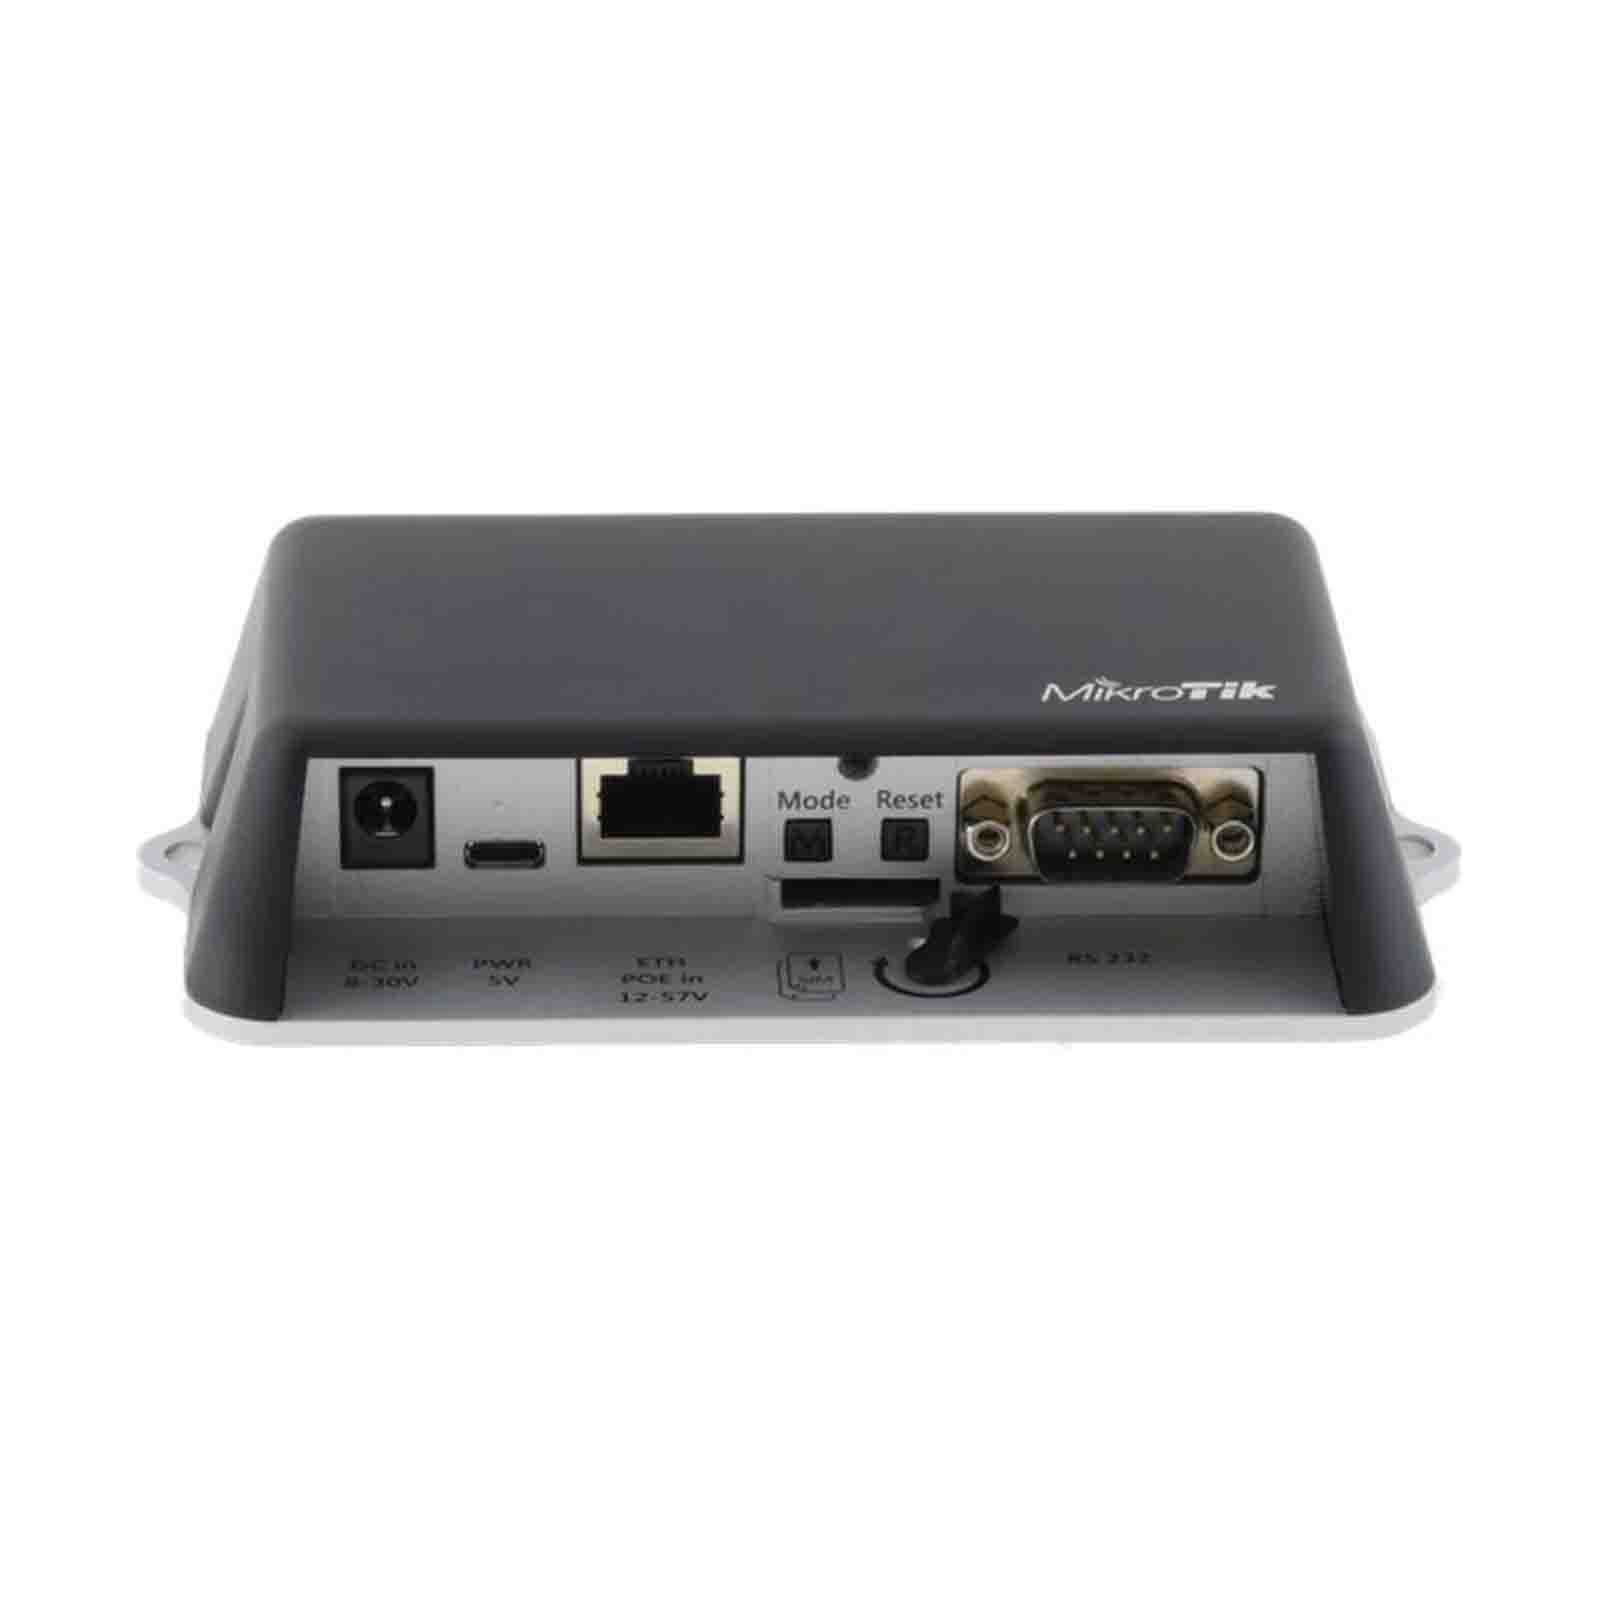 Router LtAP mini LTE kit RB912R-2nD-LTm&R11e-LTE MikroTik